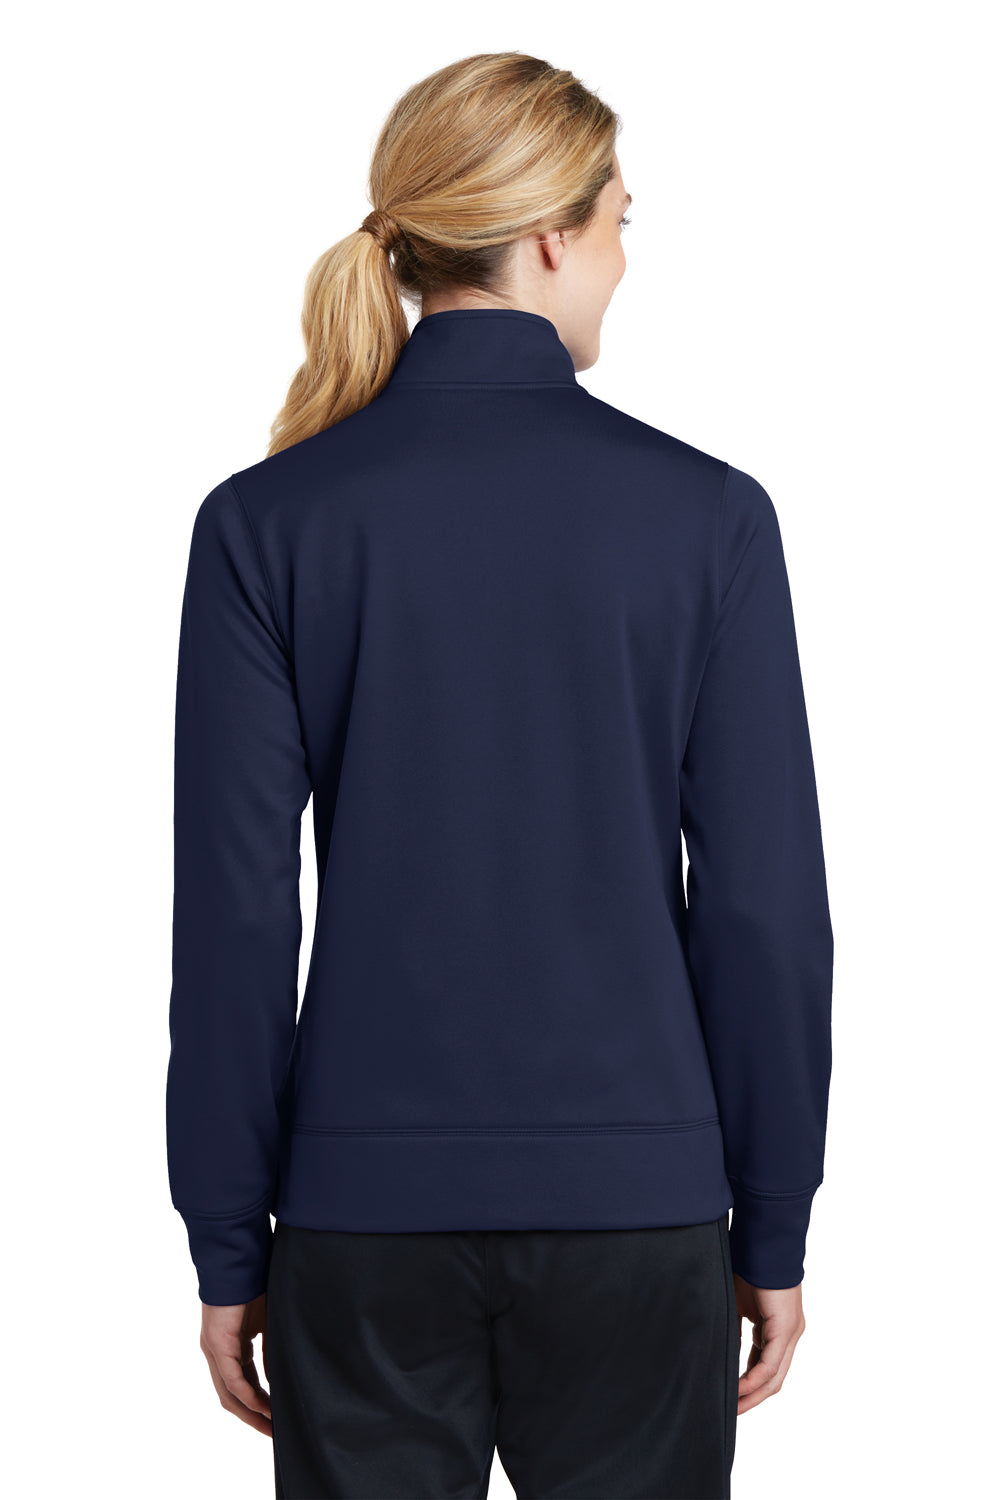 Sport-Tek LST241 Womens Sport-Wick Moisture Wicking Fleece Full Zip Sweatshirt Navy Blue Back